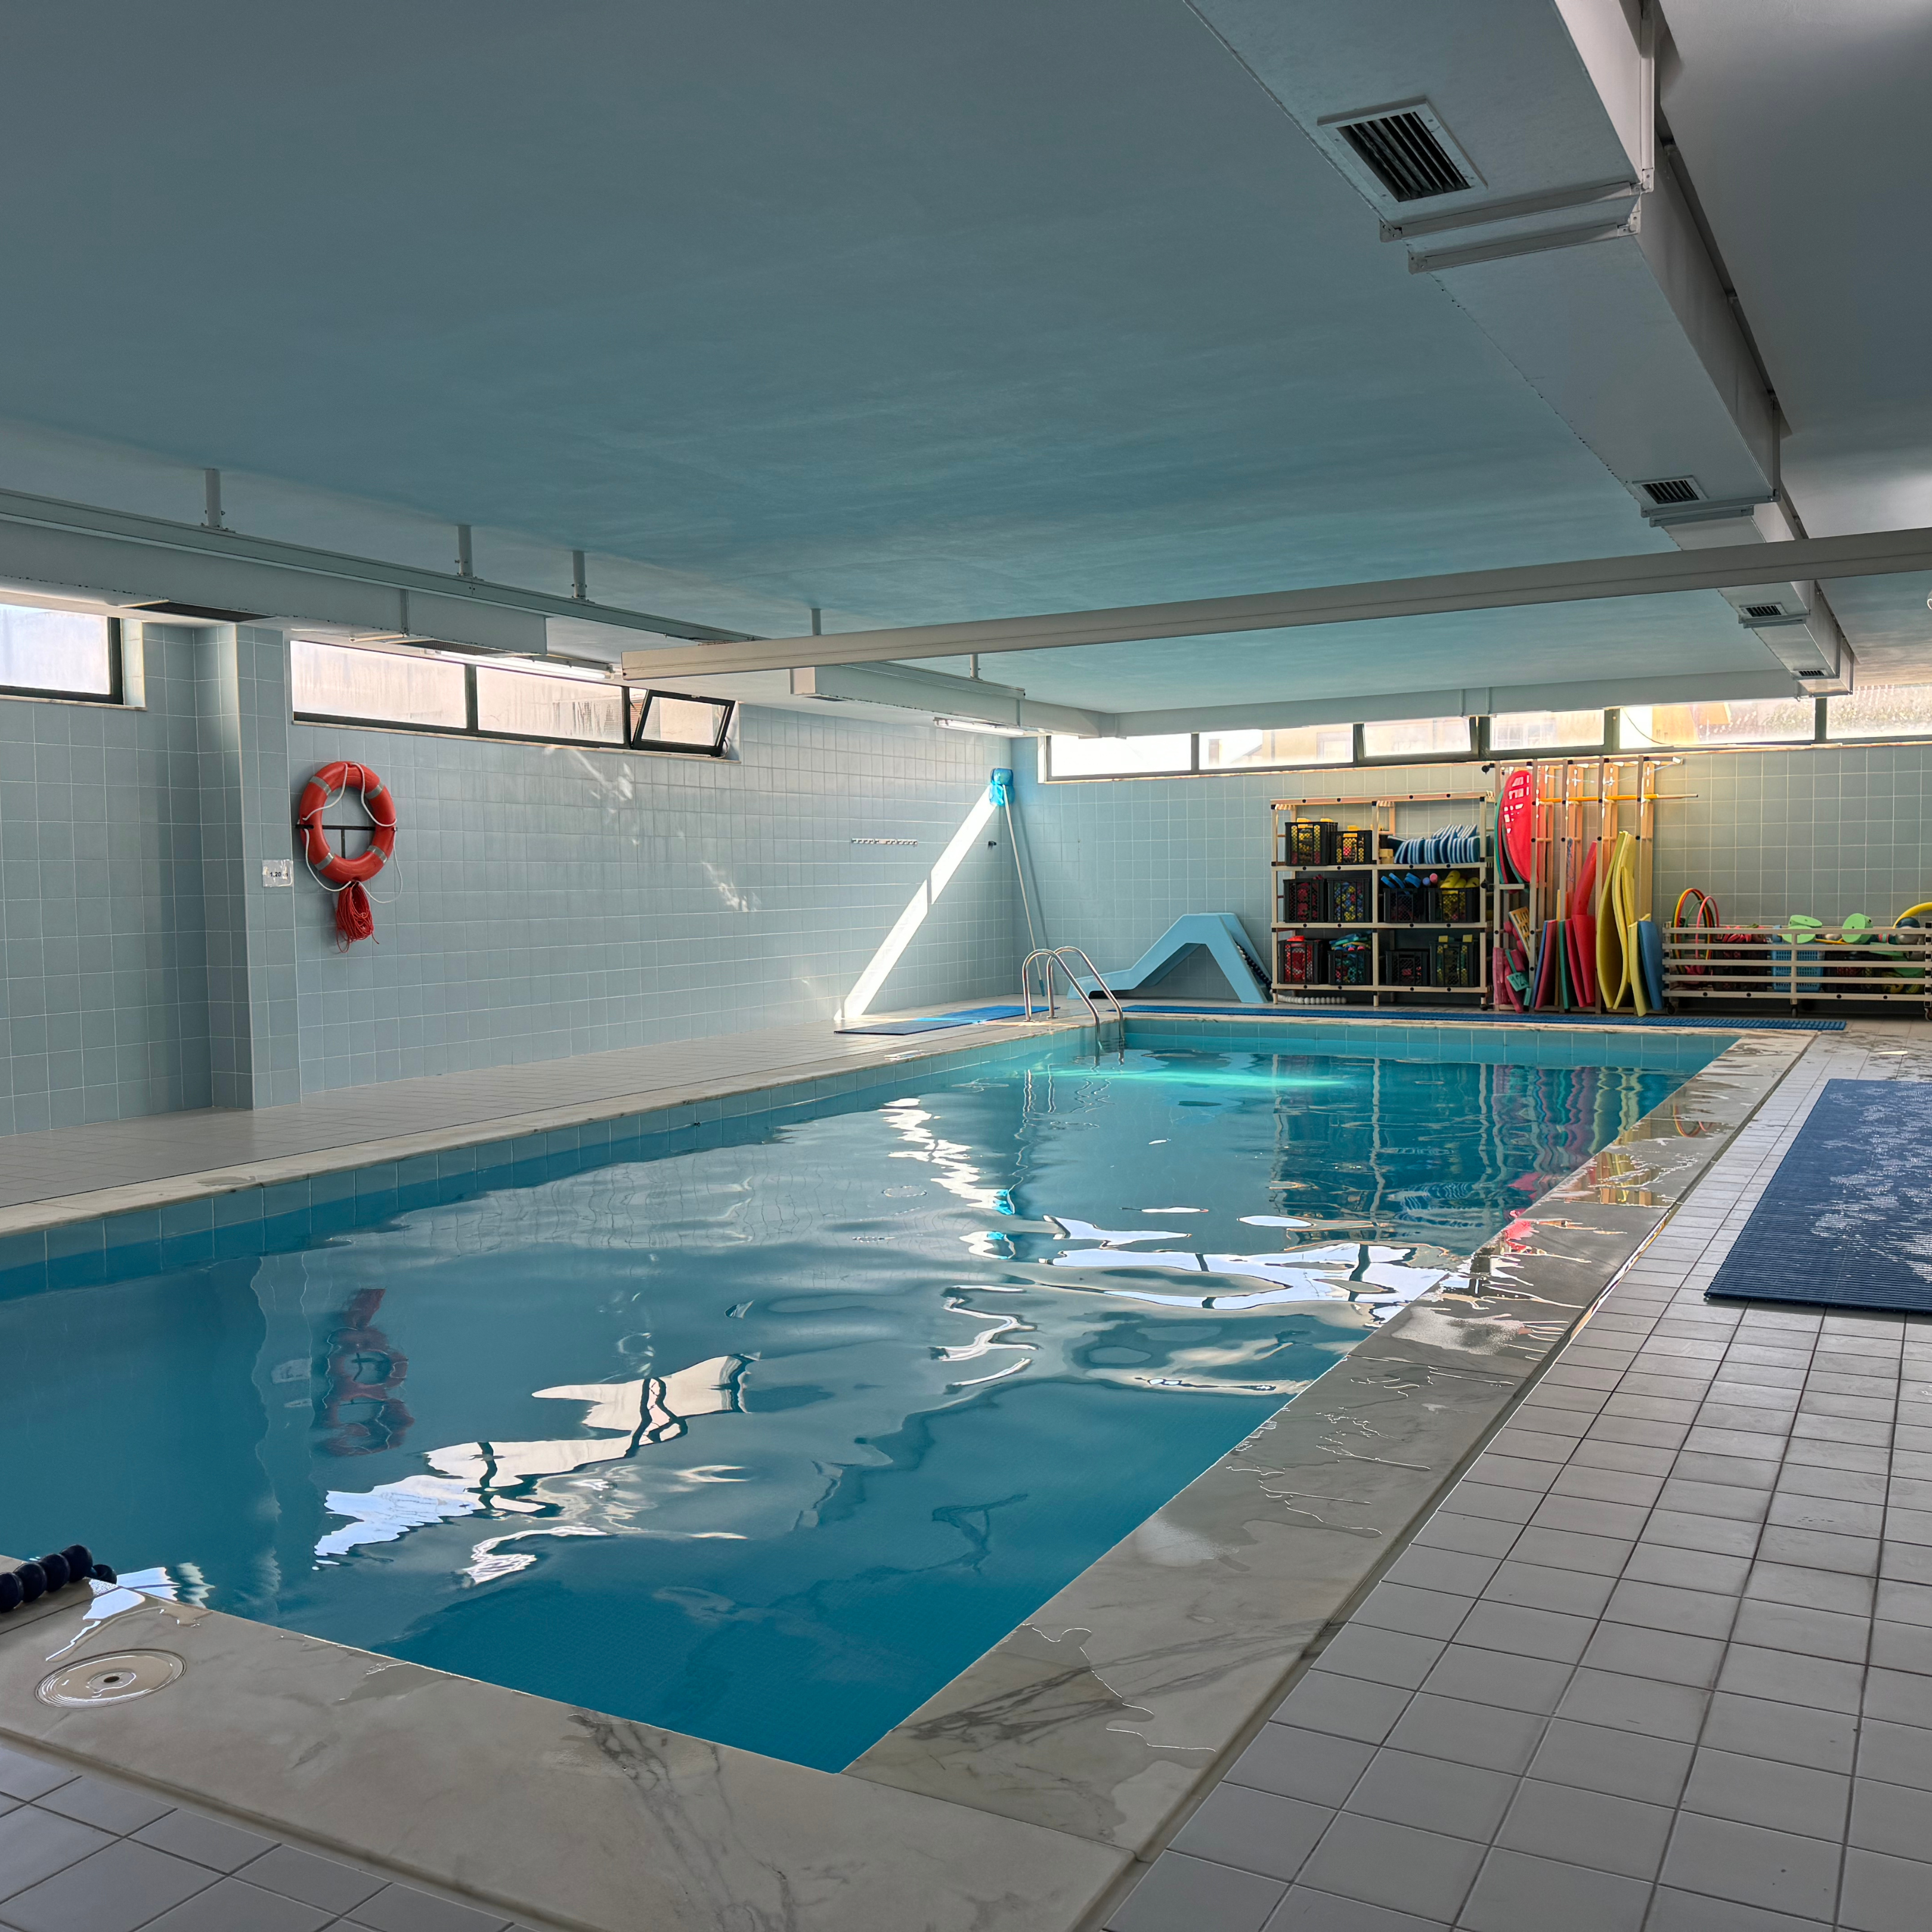 Fotografia de piscina interior. A piscina encontra-se com água mas sem utilizadores. Ao fundo, junto da parede, diverso material para práticas aquáticas.